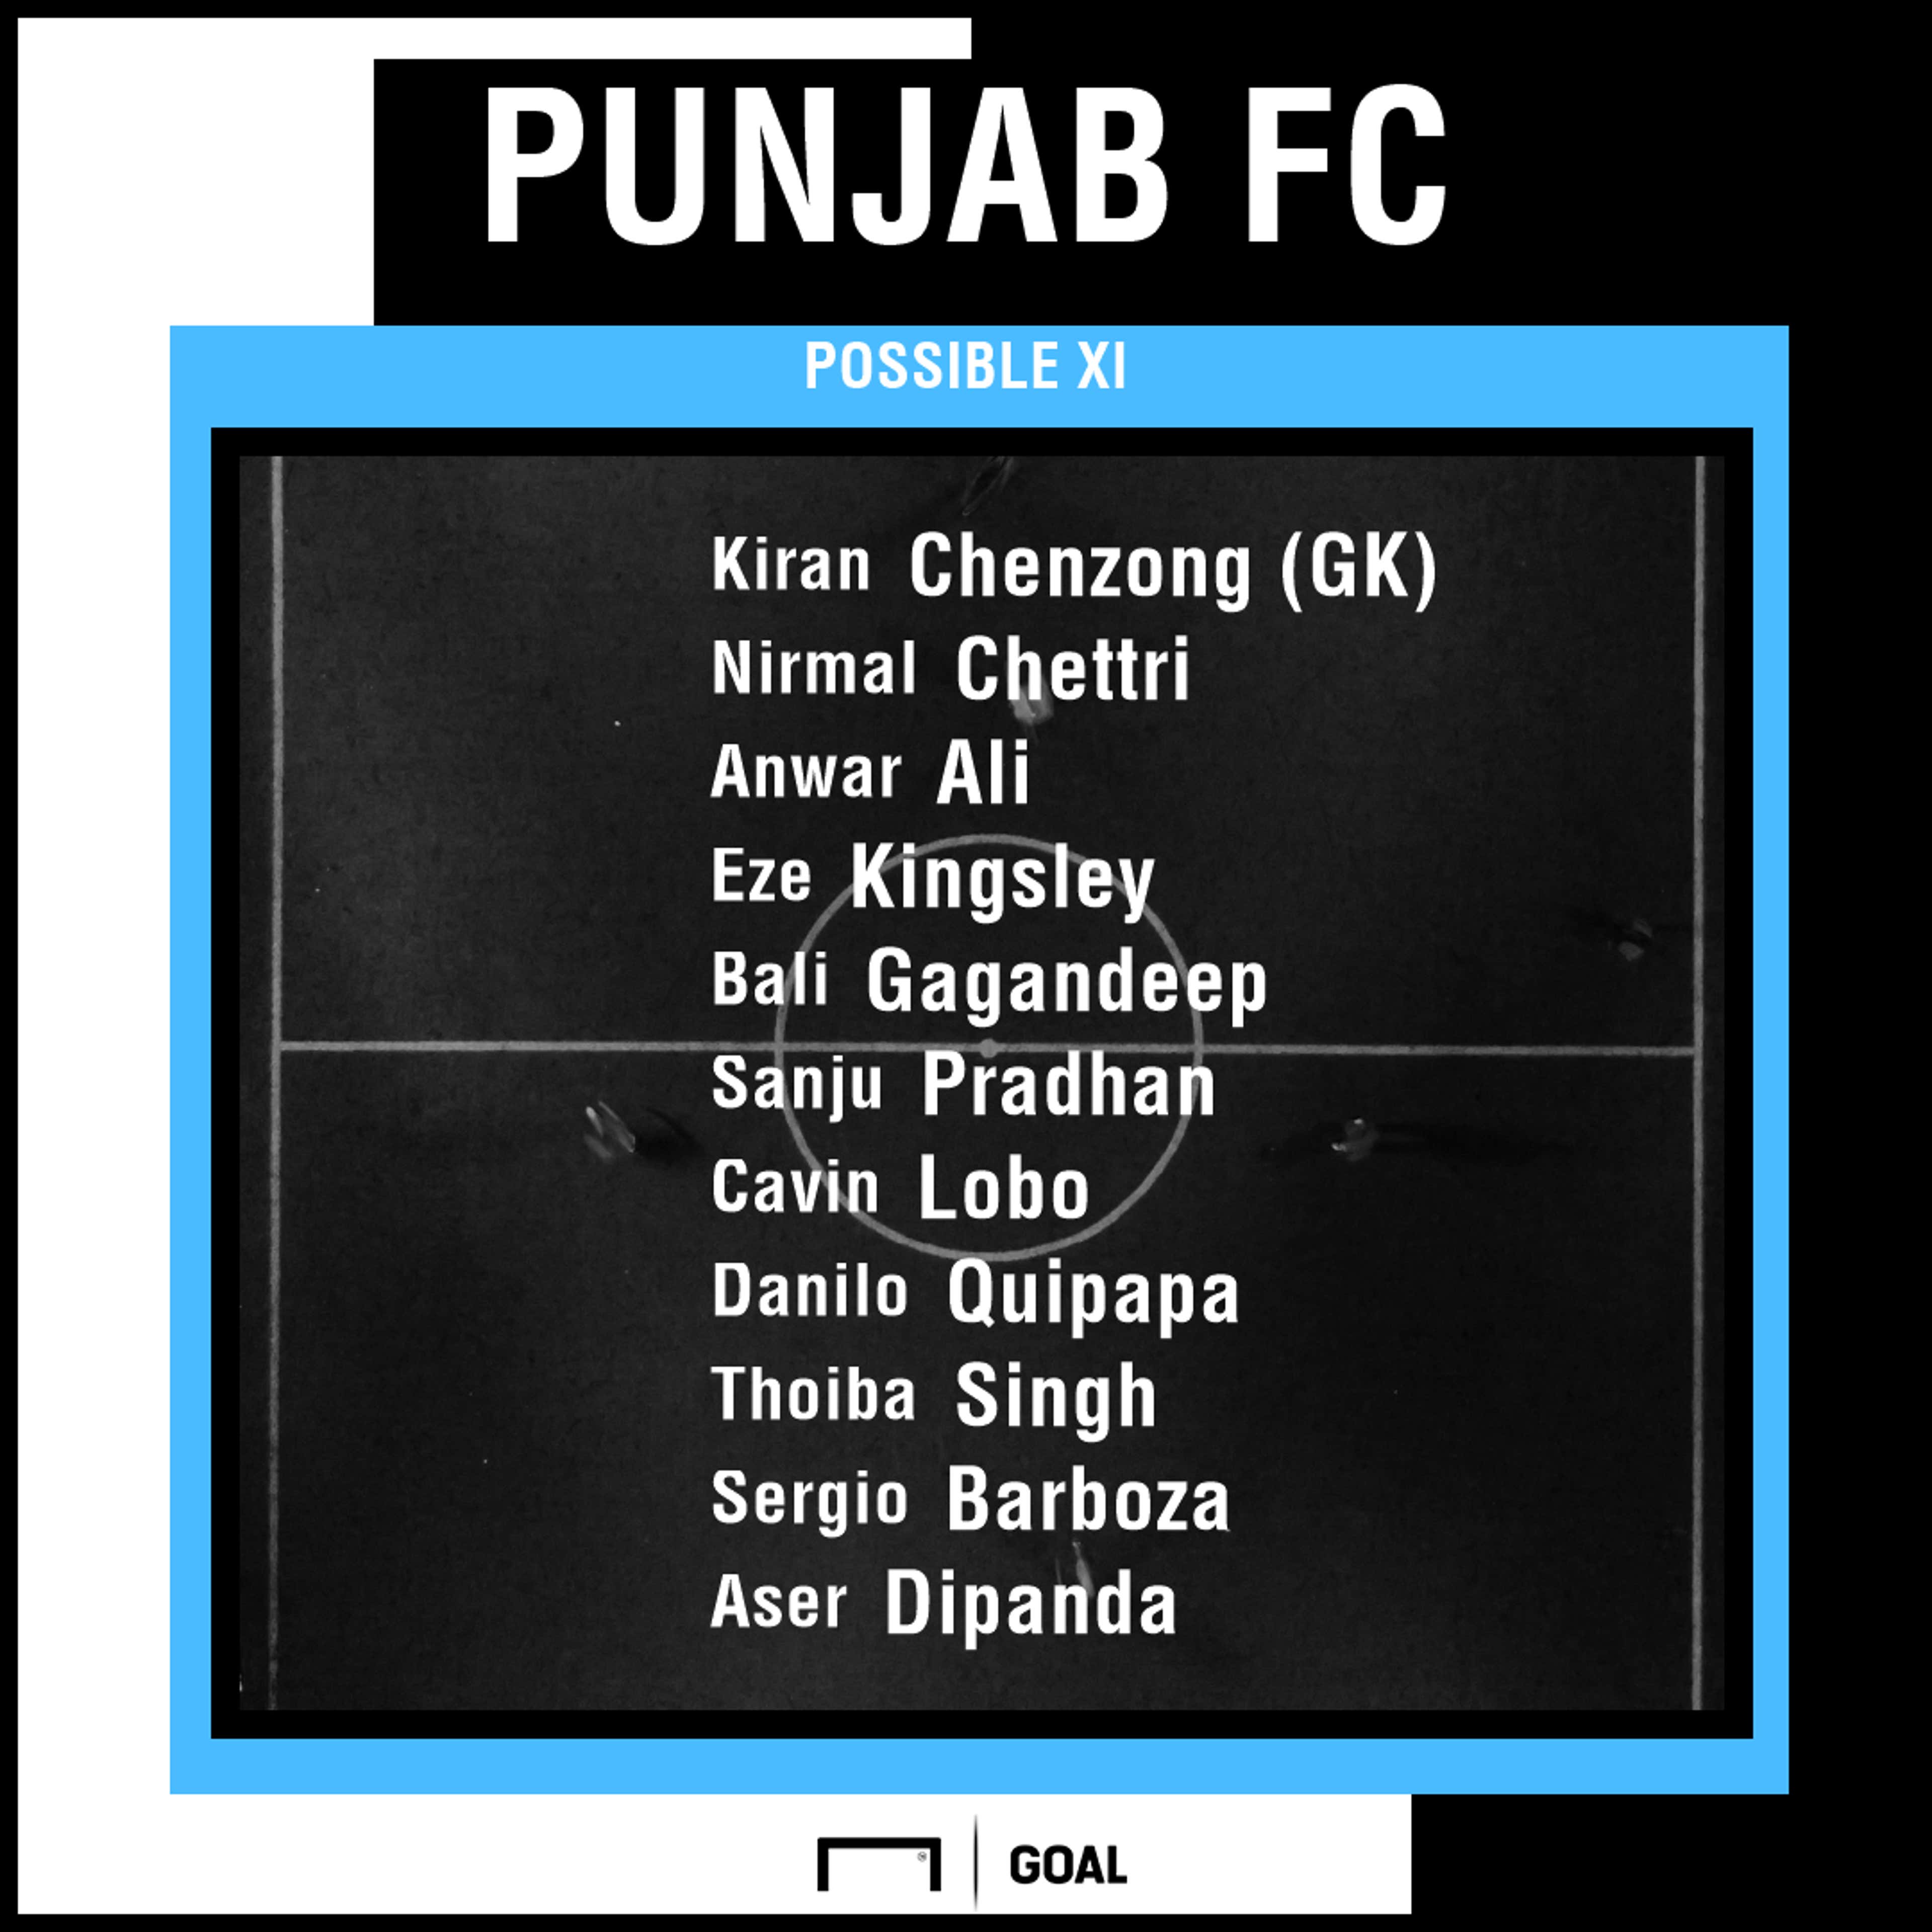 Punjab FC possible XI